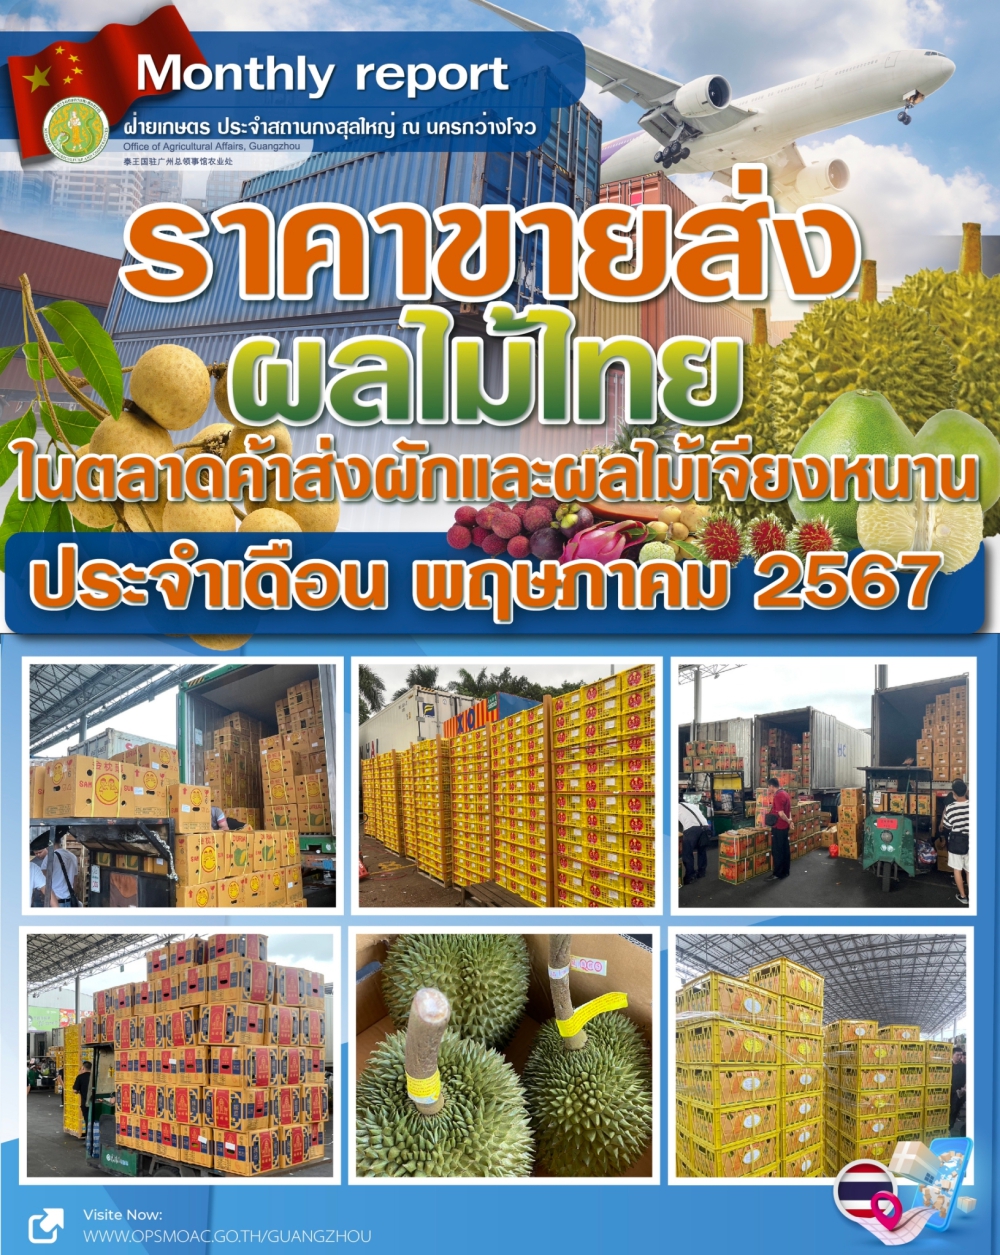 ราคาขายส่งผลไม้ไทยและเวียดนามที่ตลาดเจียงหนาน